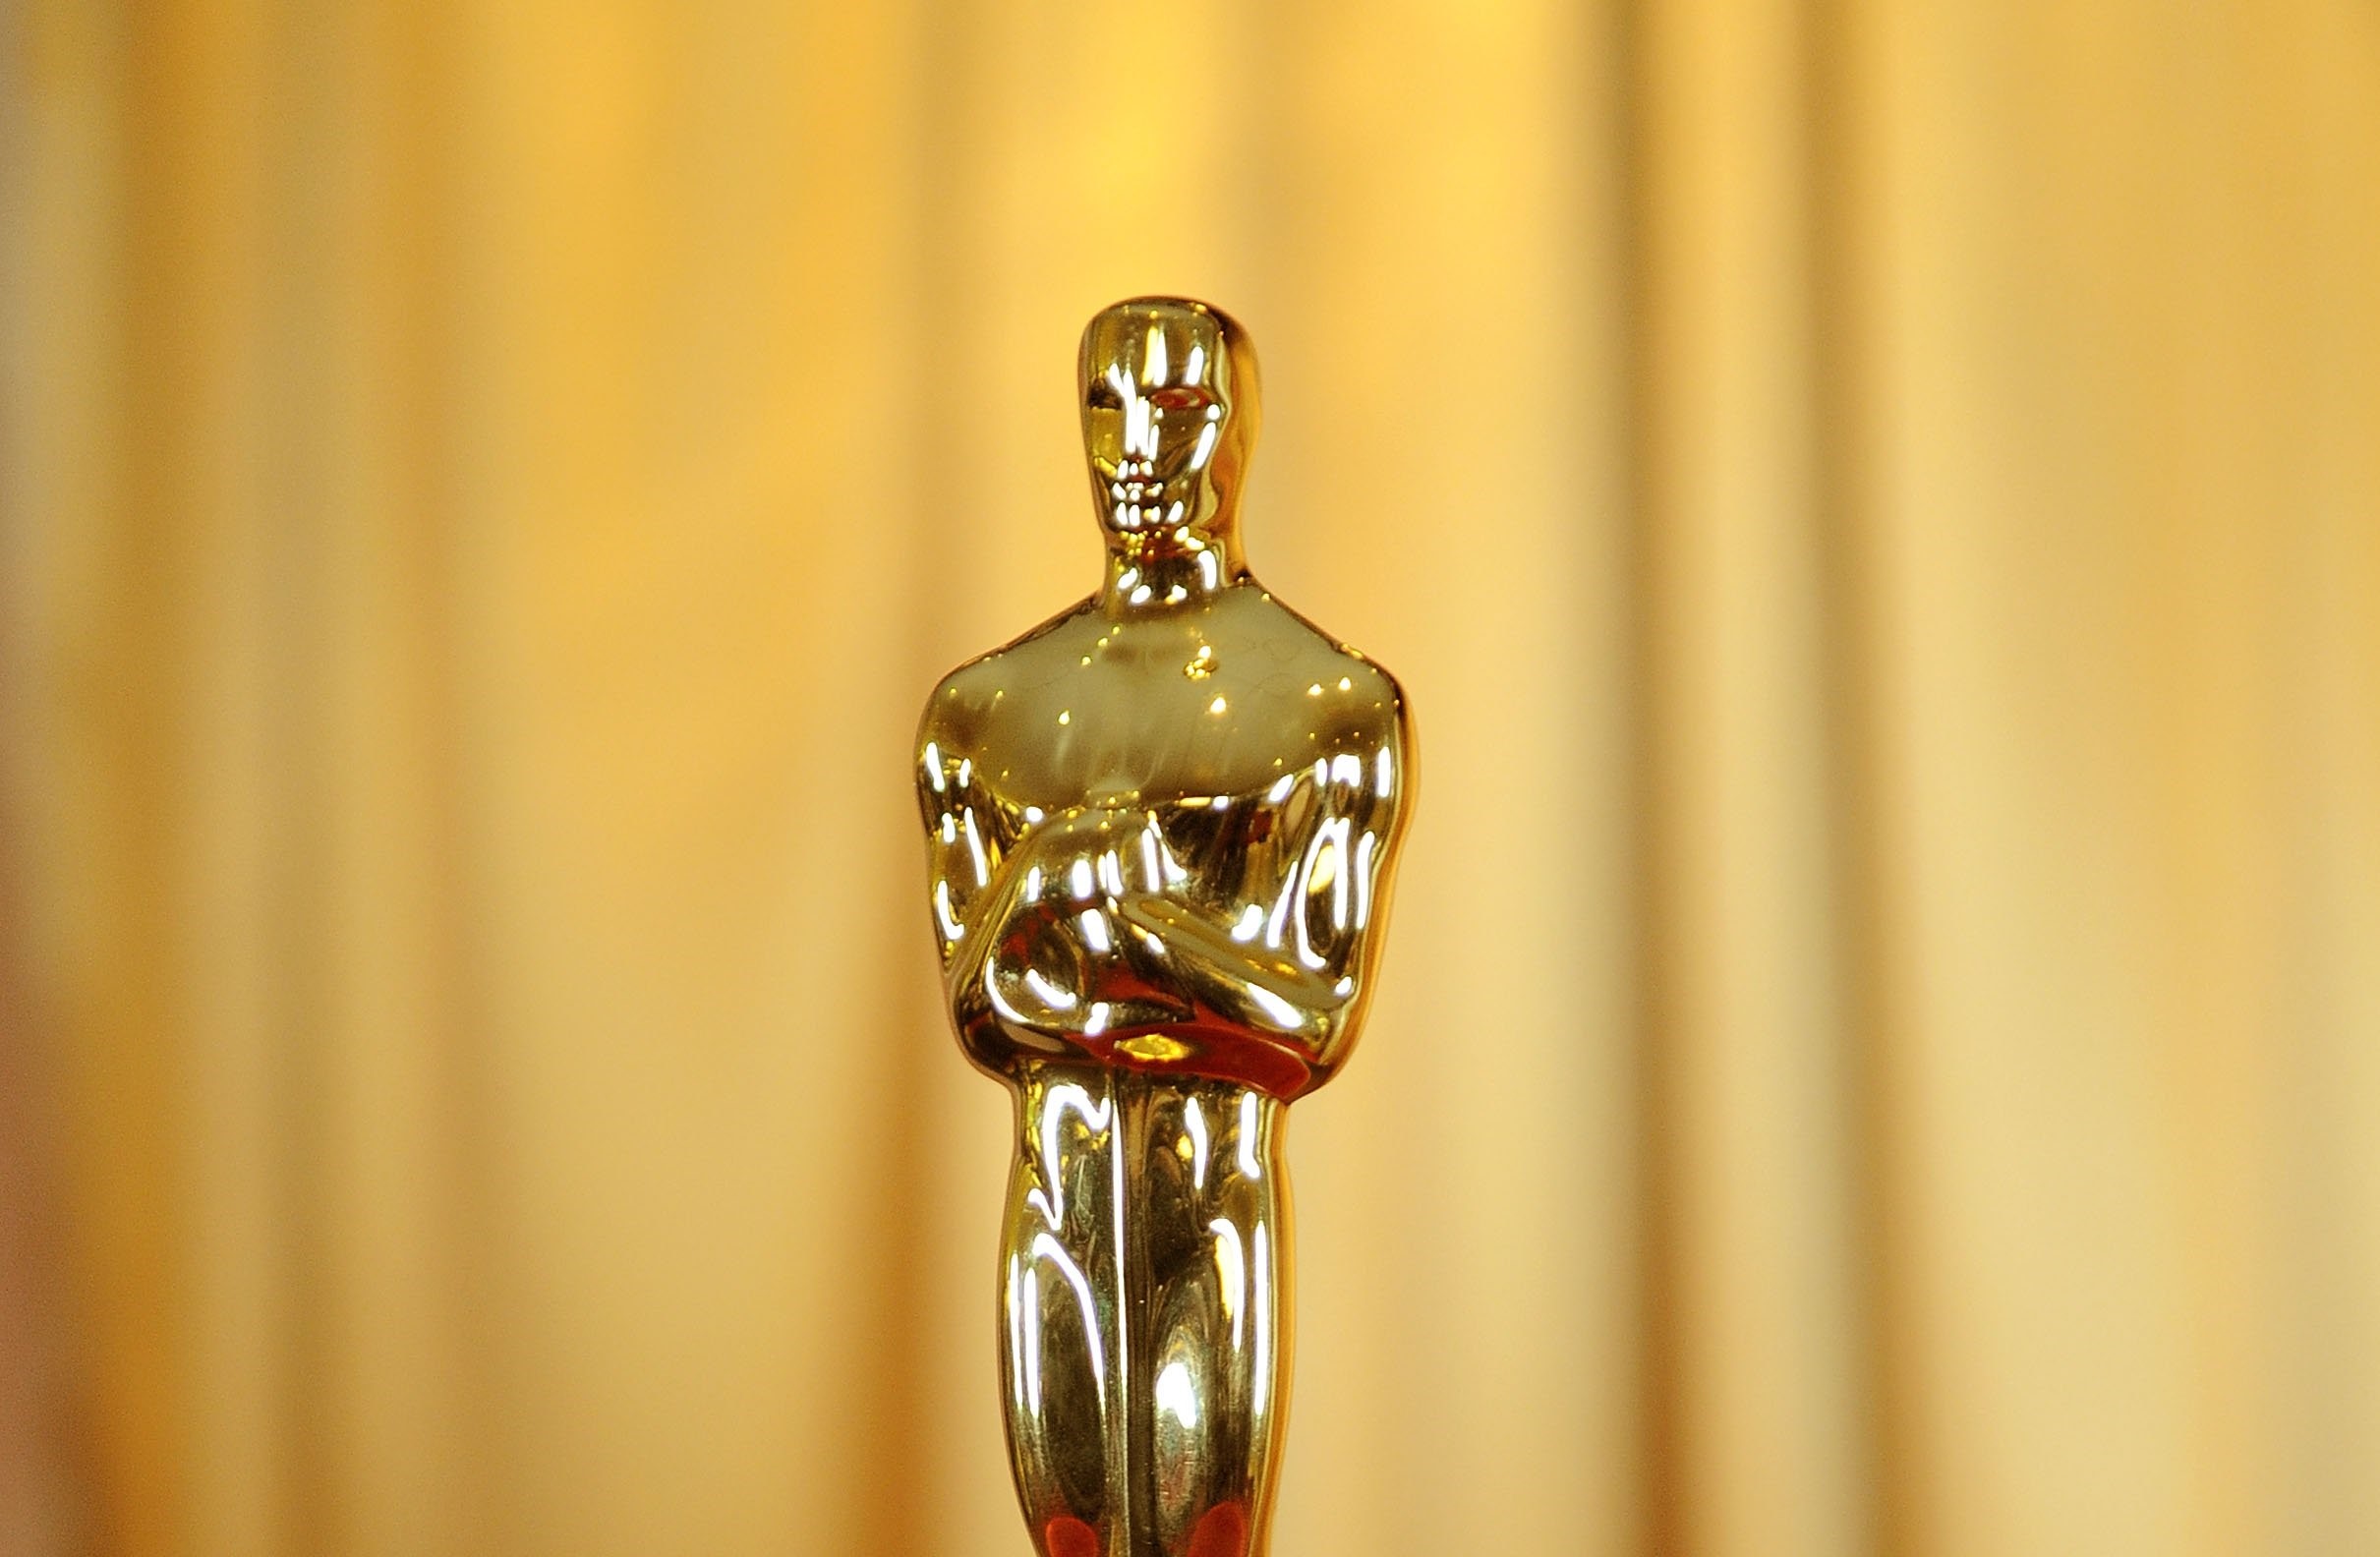 Больше фильмов на «Оскаре»: кинопремия вводит новые правила - изображение 1